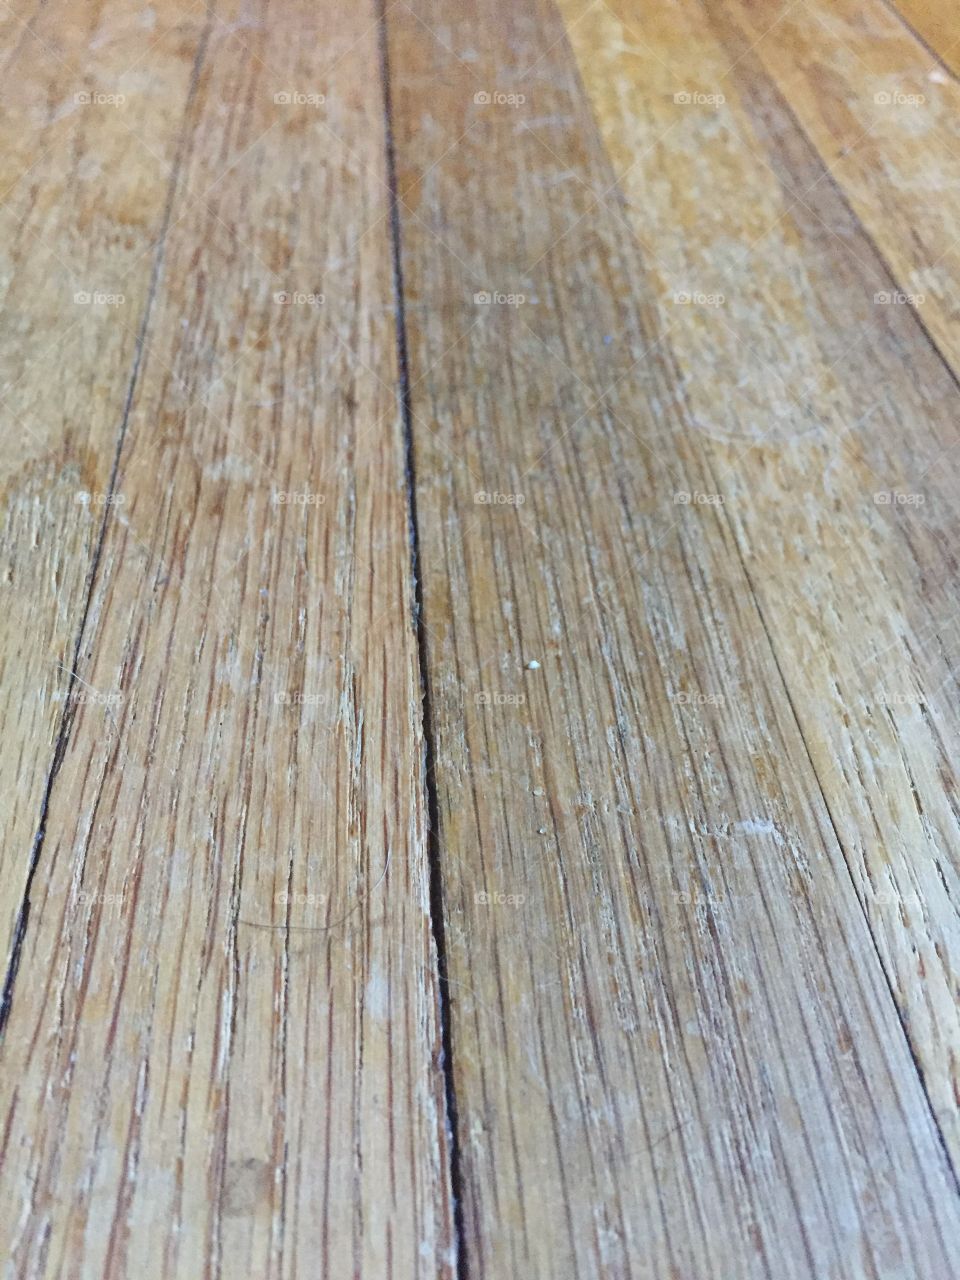 Macro wood